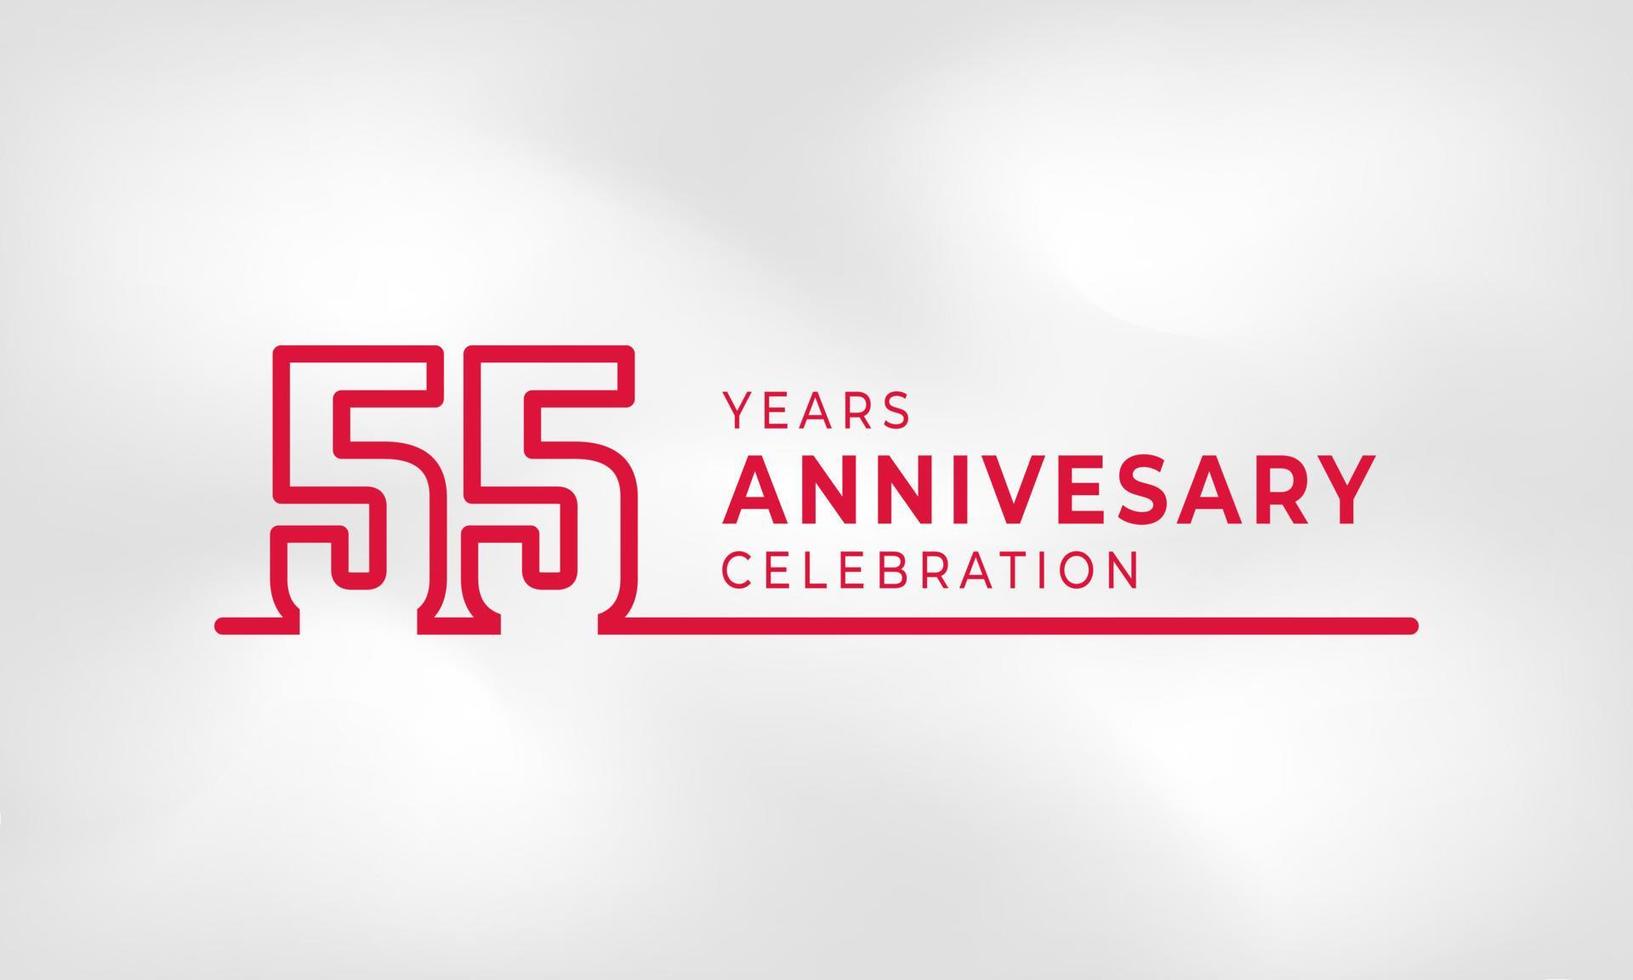 Celebração de aniversário de 55 anos vinculada ao contorno do logotipo cor vermelha para evento de celebração, casamento, cartão de felicitações e convite isolado no fundo de textura branca vetor